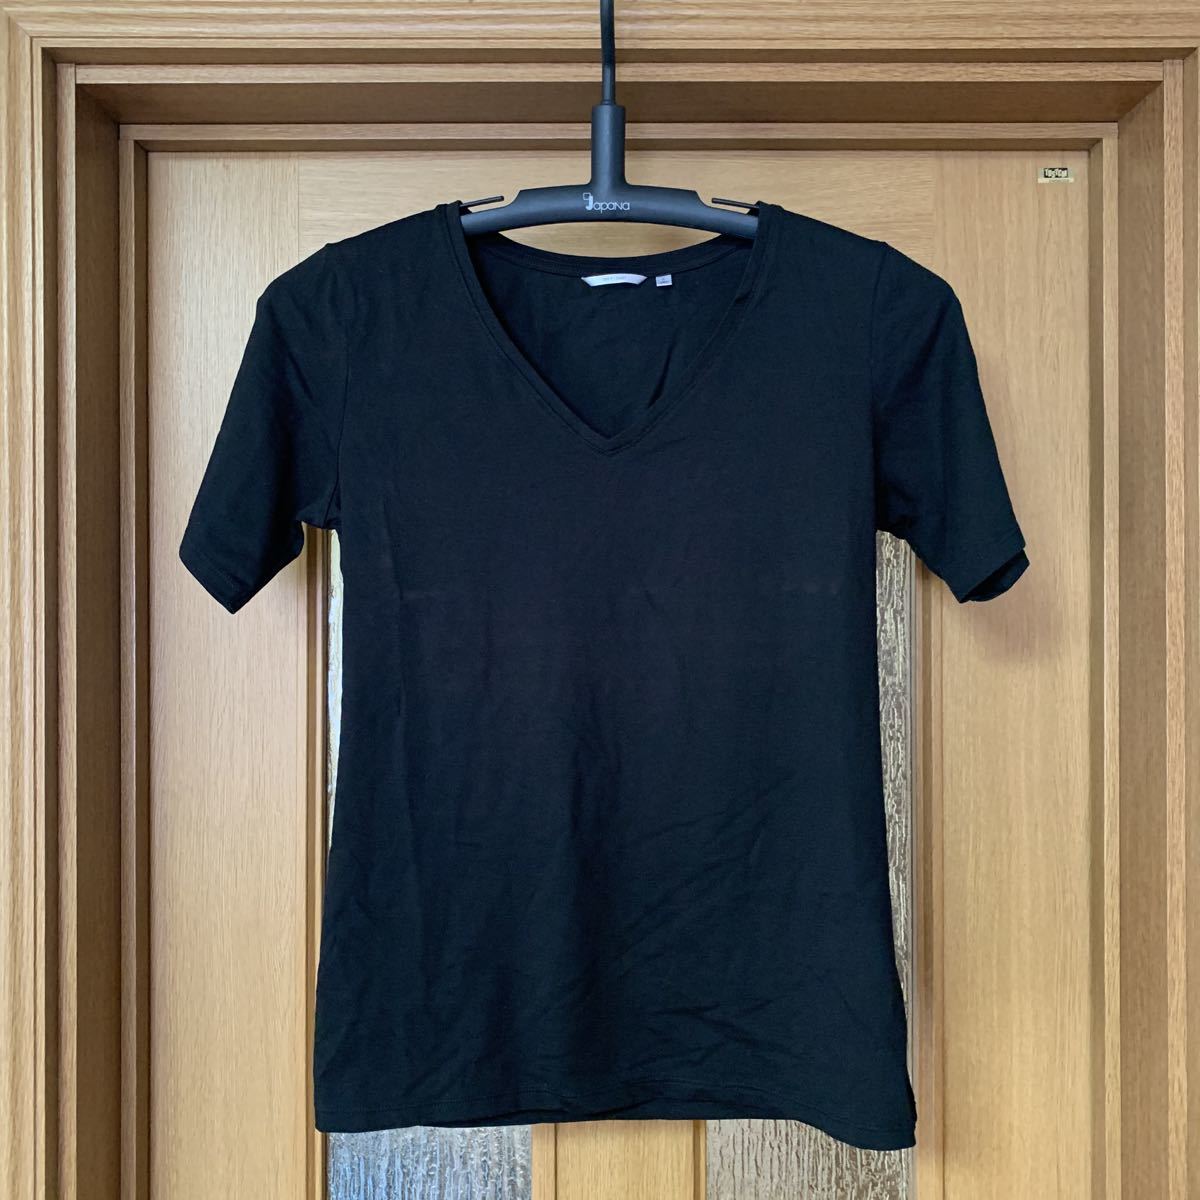  Uniqlo UNIQLO DRY T-SHIRT женский dry футболка tops черный размер L грудь 88A рост 160 1.2 раз использование прекрасный товар бесплатная доставка 